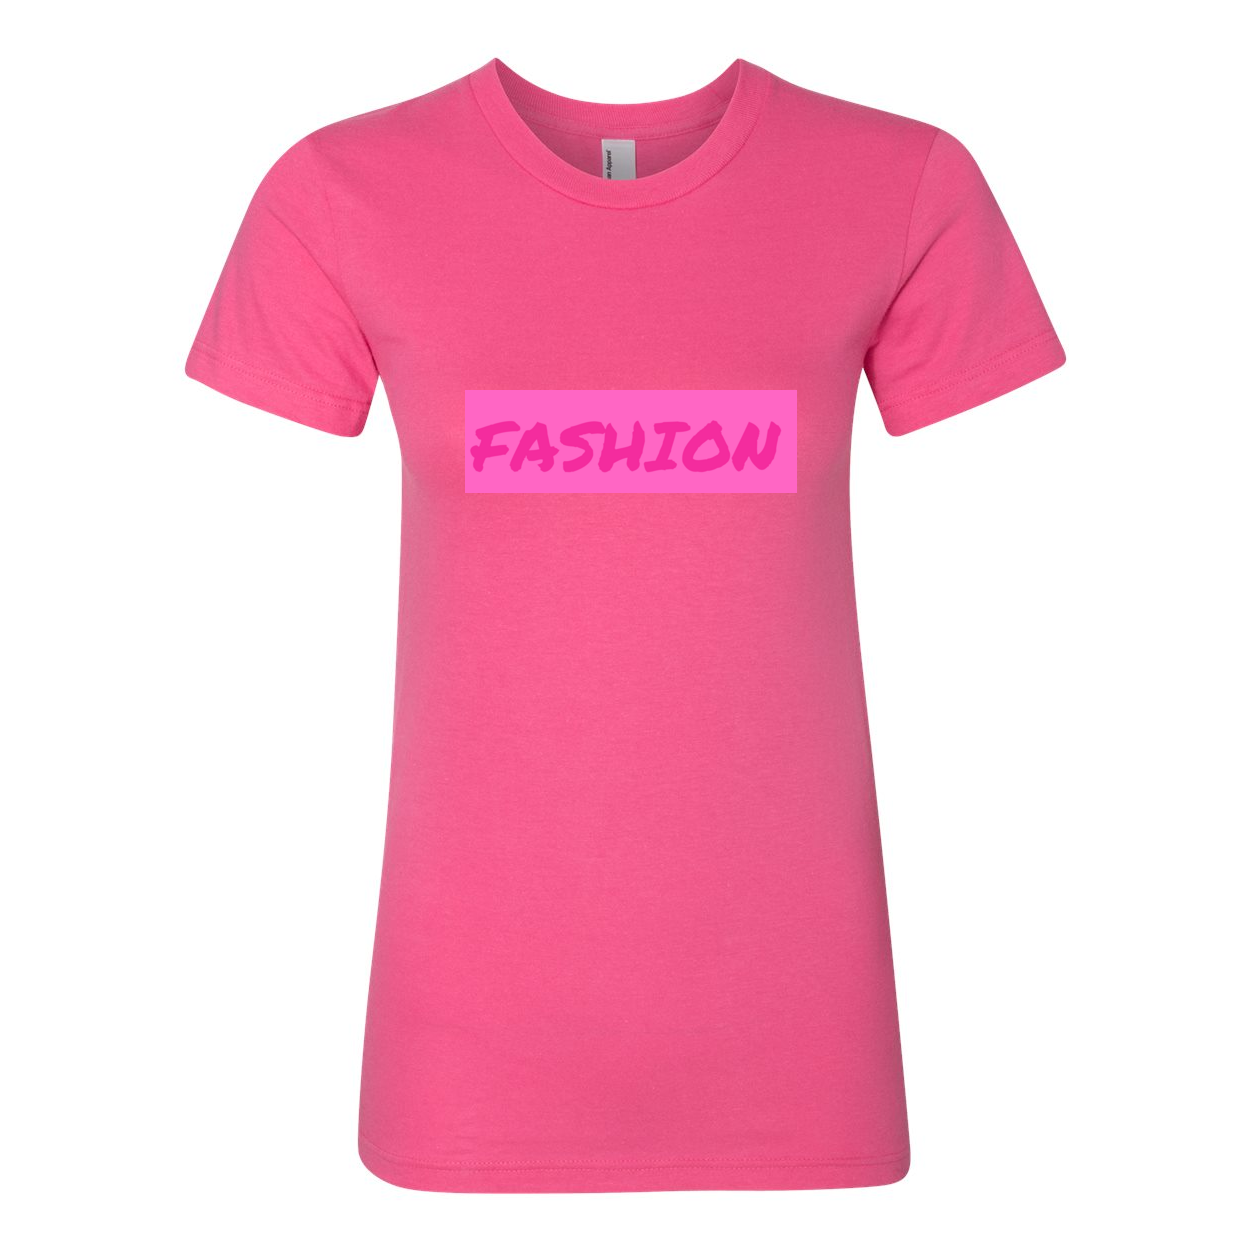 Fashion T-shirt